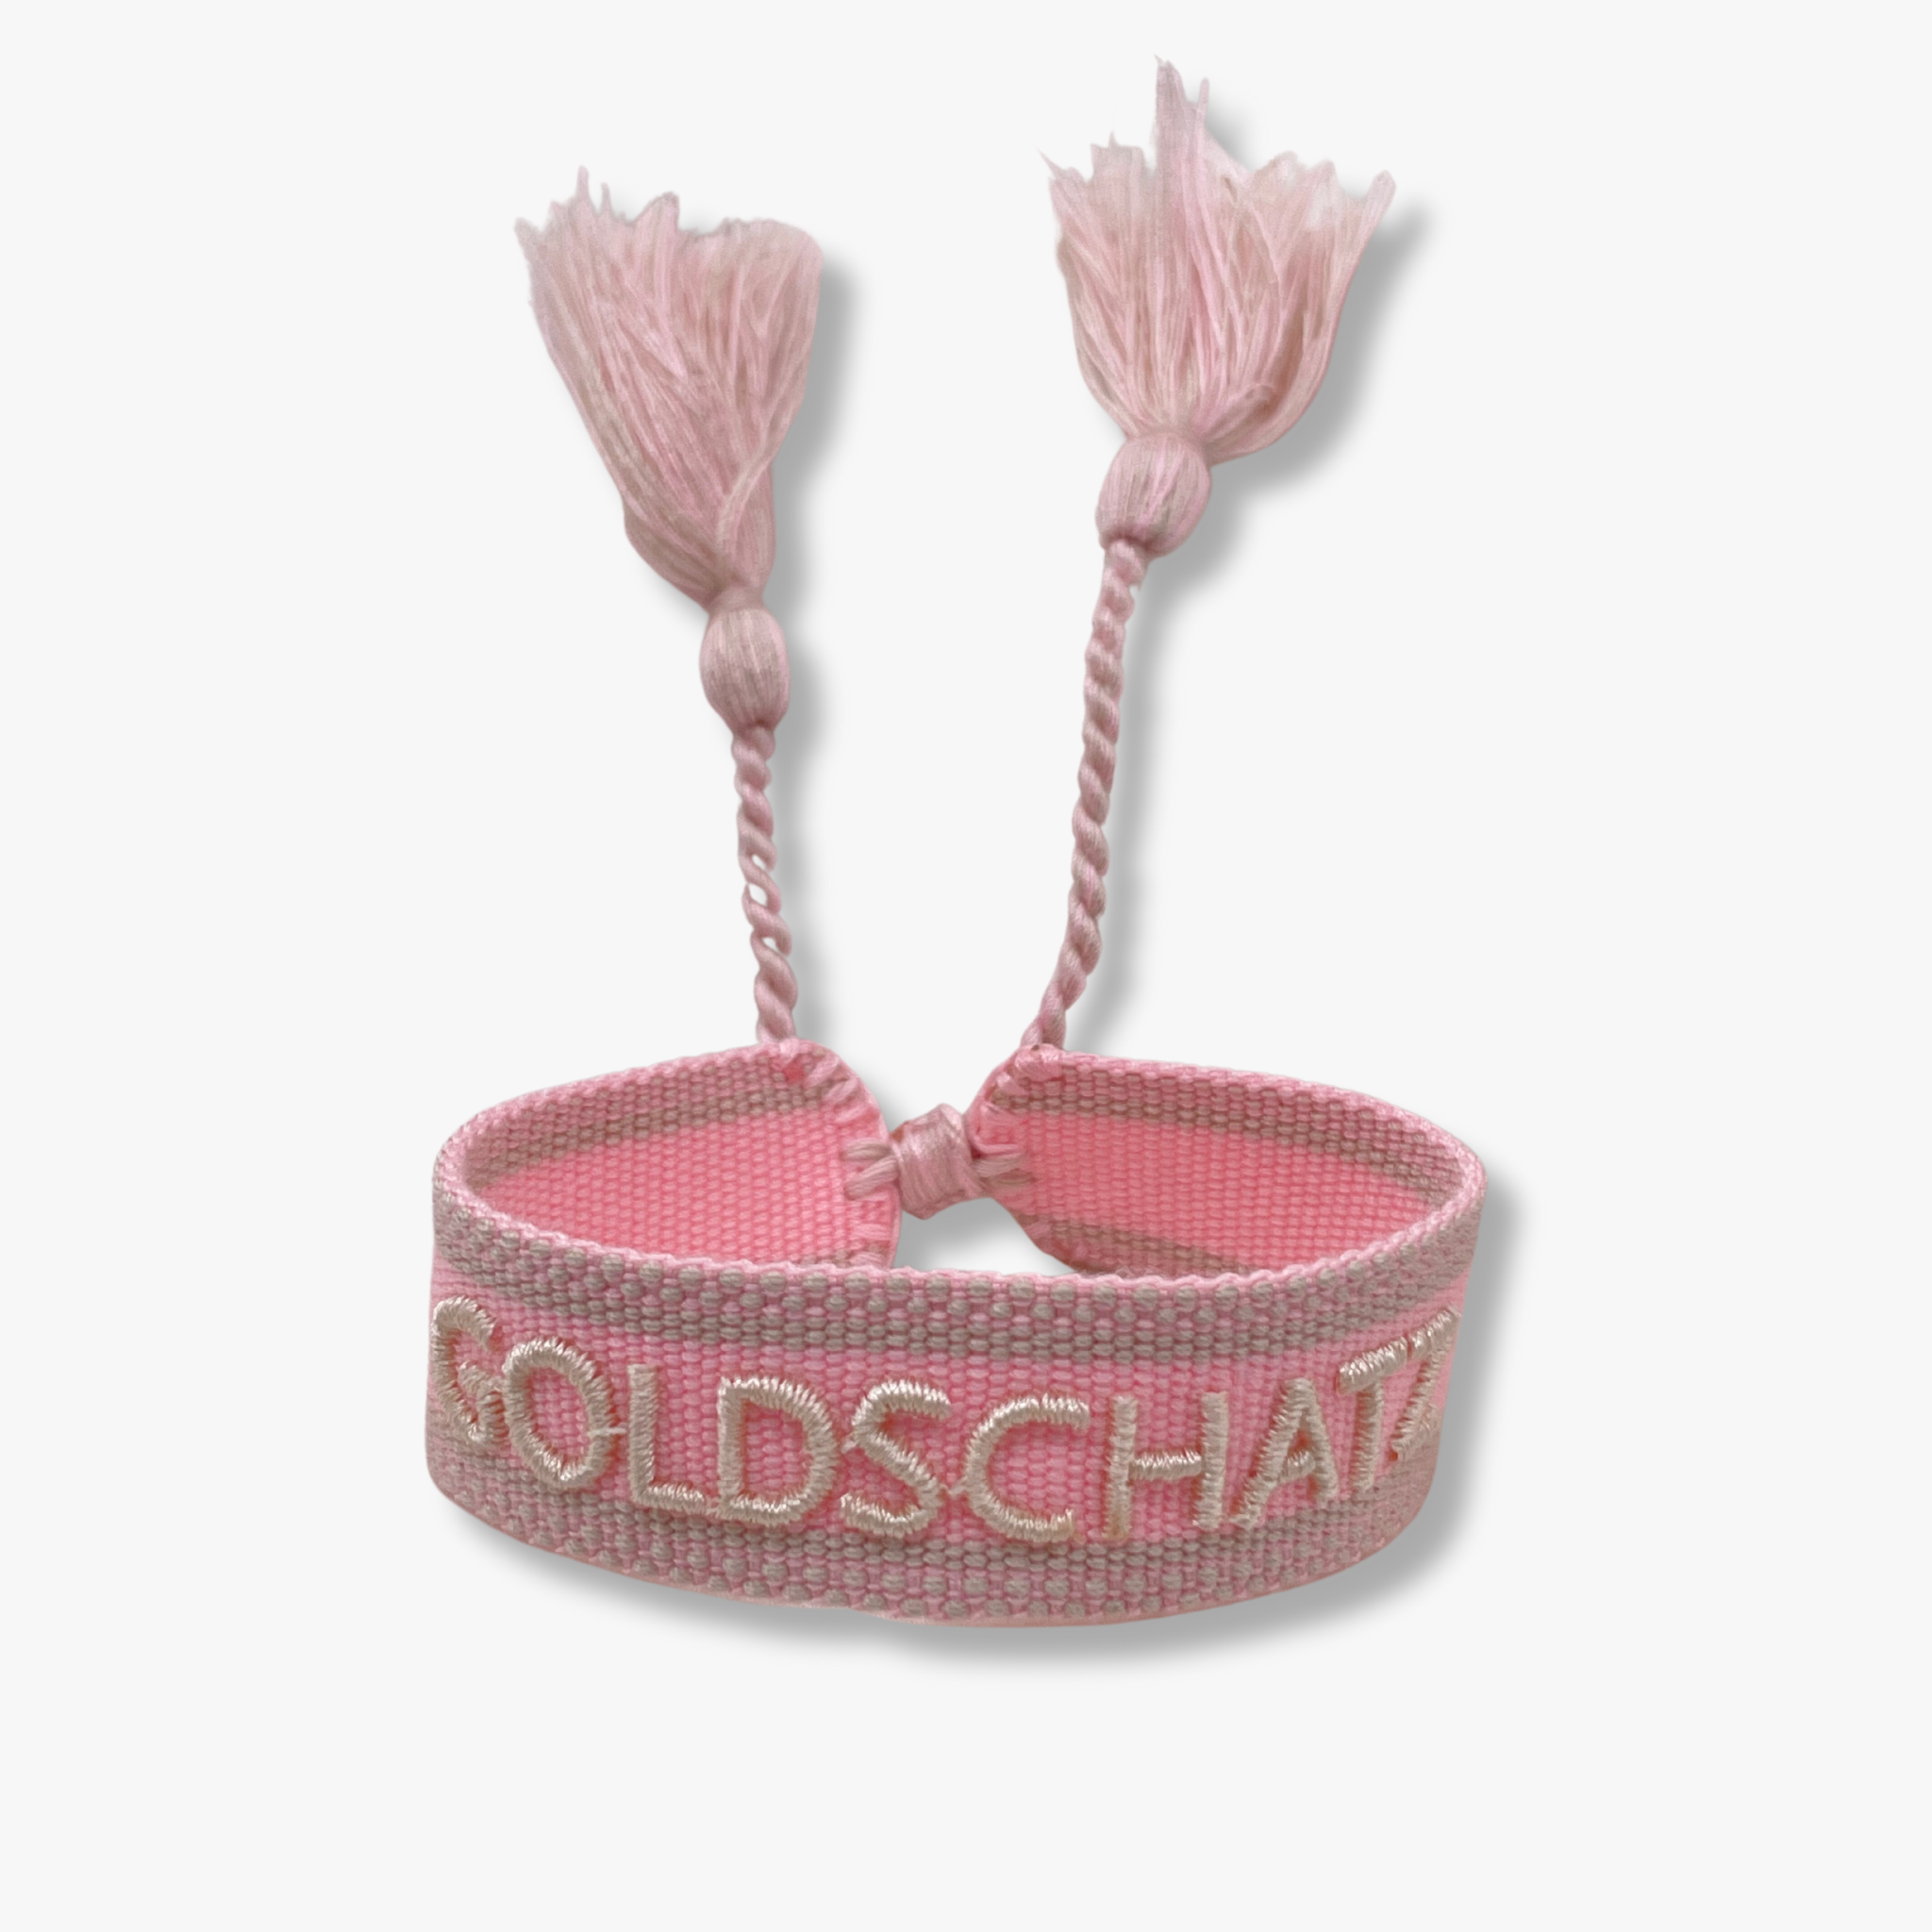 Festival Bracelet Goldschatz